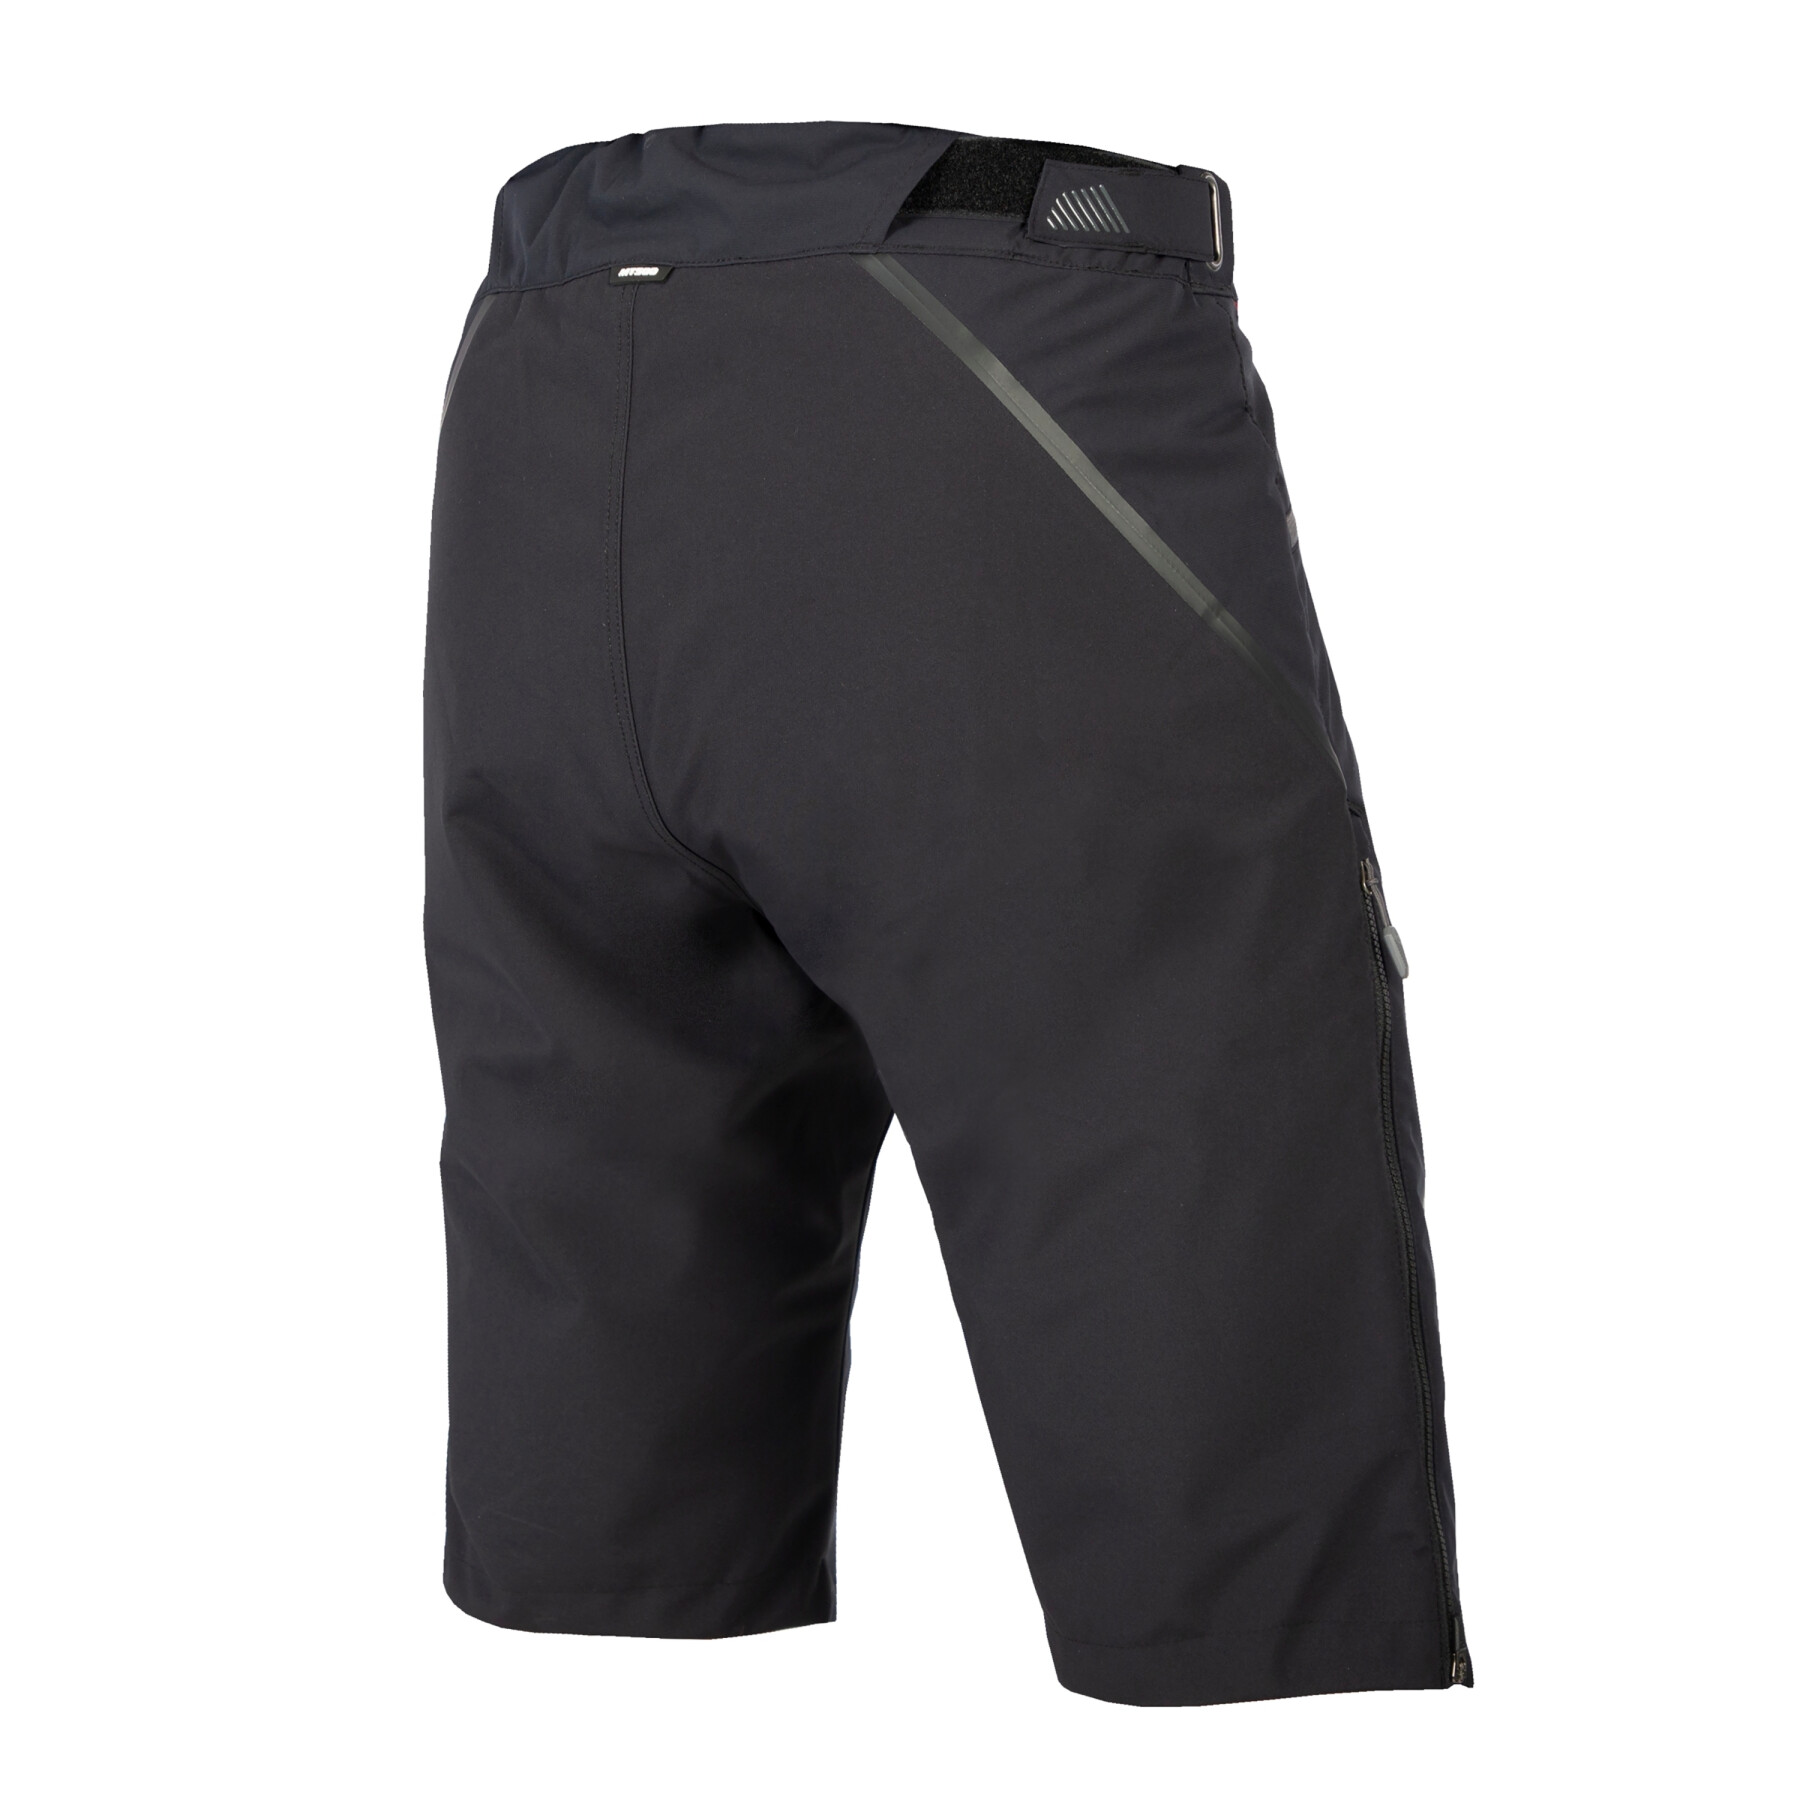 Nul graden shorts Endura MT500